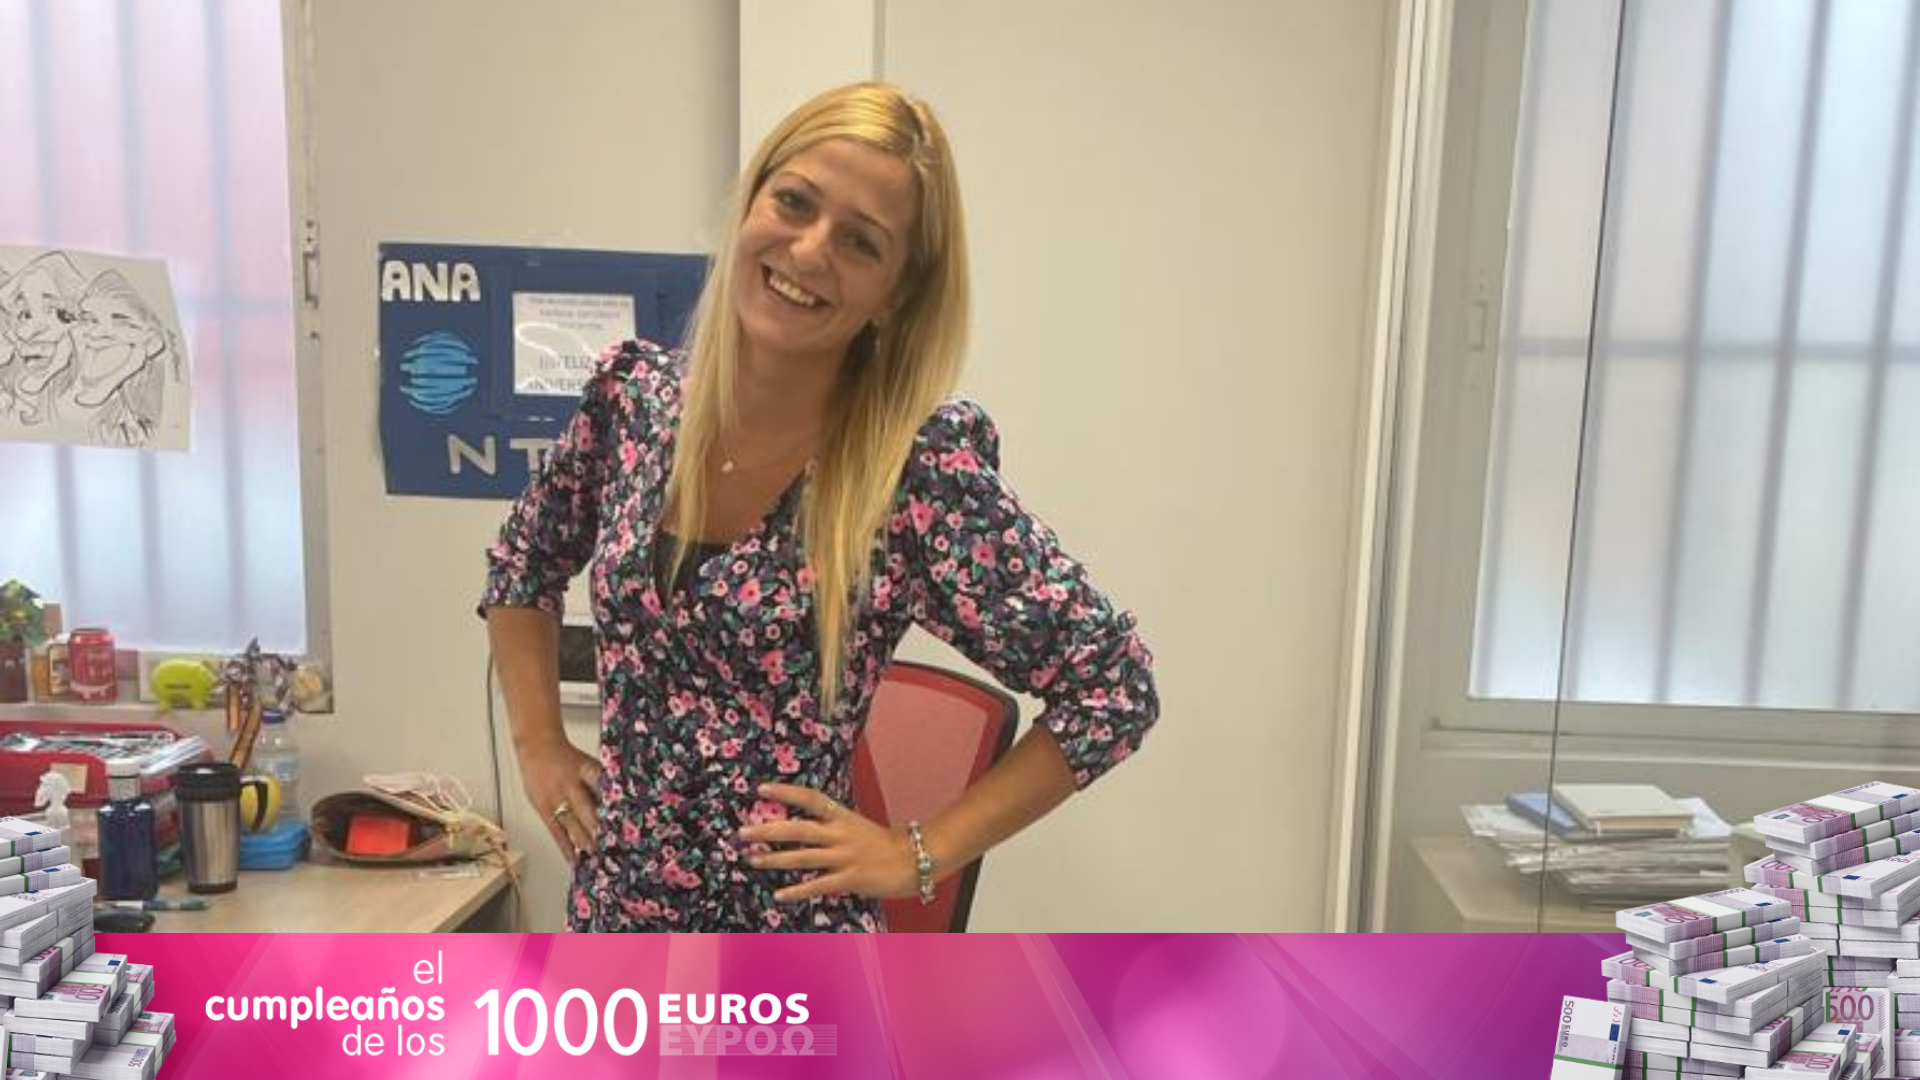 Ana María, ganadora de 1.000 euros: "No imagináis la alegría que hme he llevado"